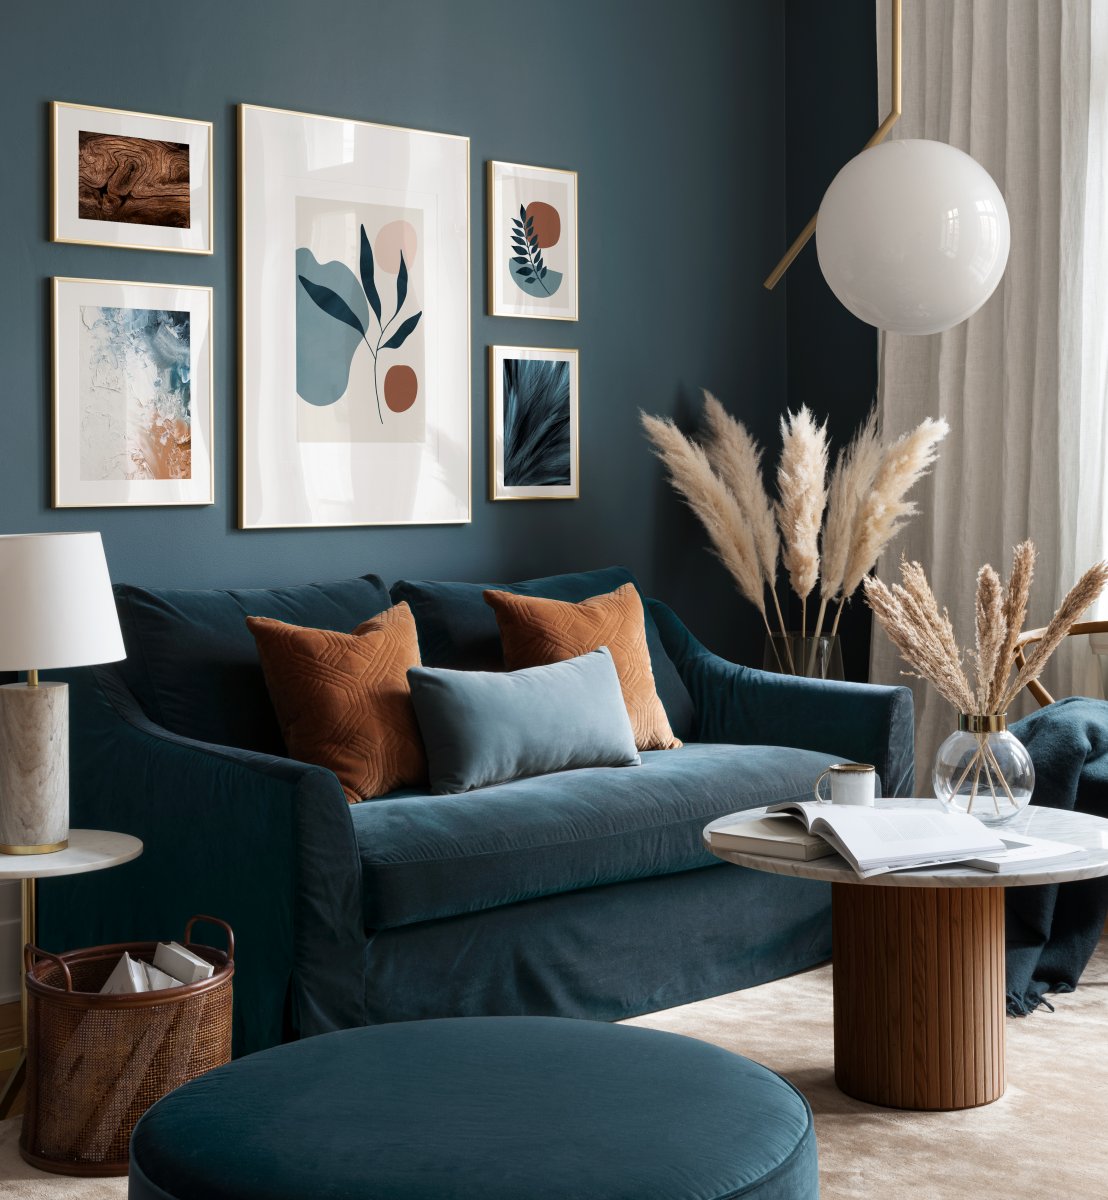 grafiske plakater og blå teal-blå kunsttryk i moderne stue